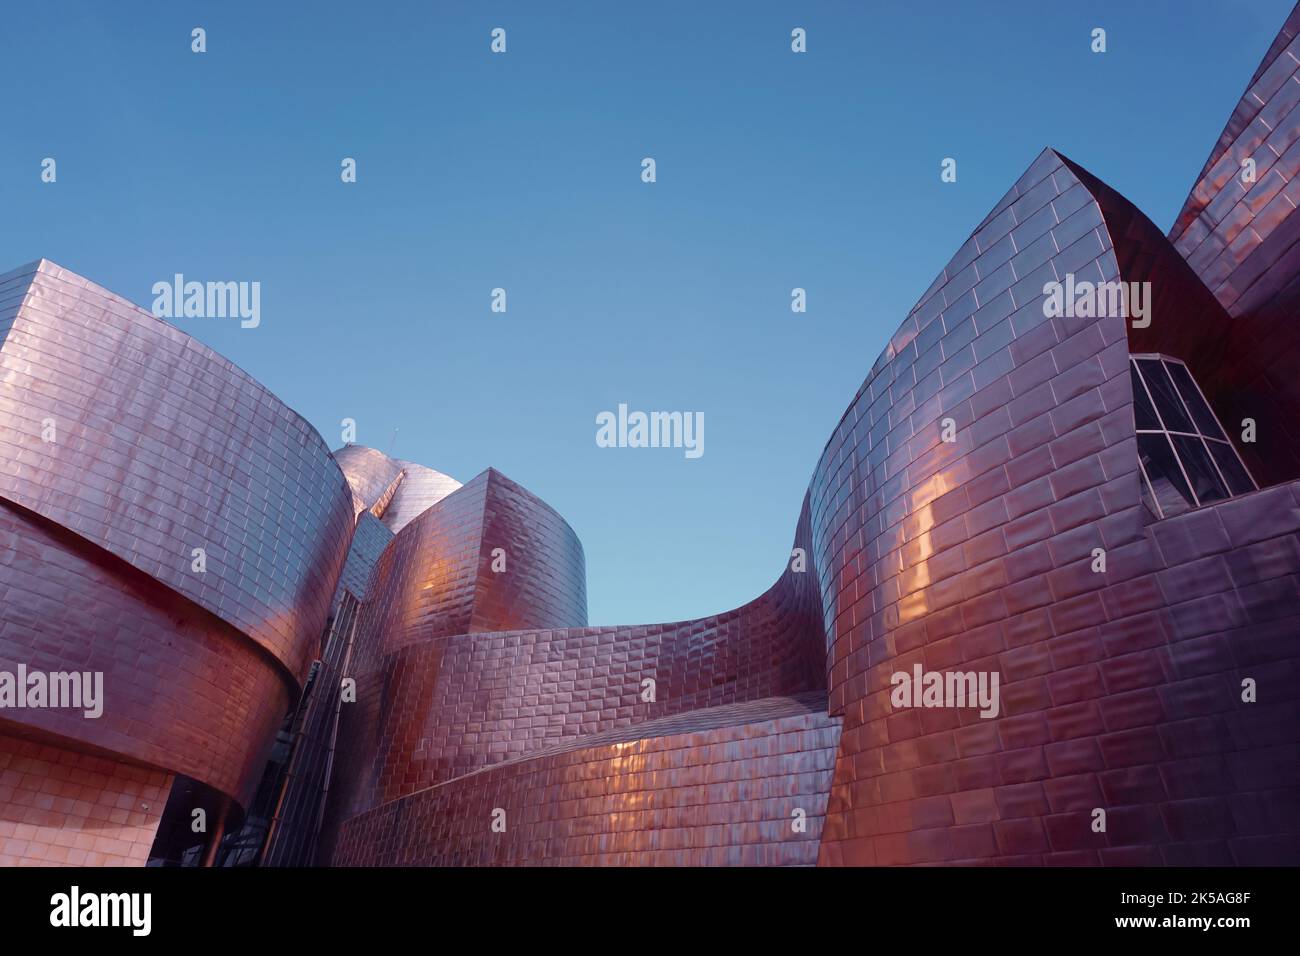 Arquitectura museo Guggenheim Bilbao, Bilbao, País vasco, españa, destinos turísticos Foto de stock